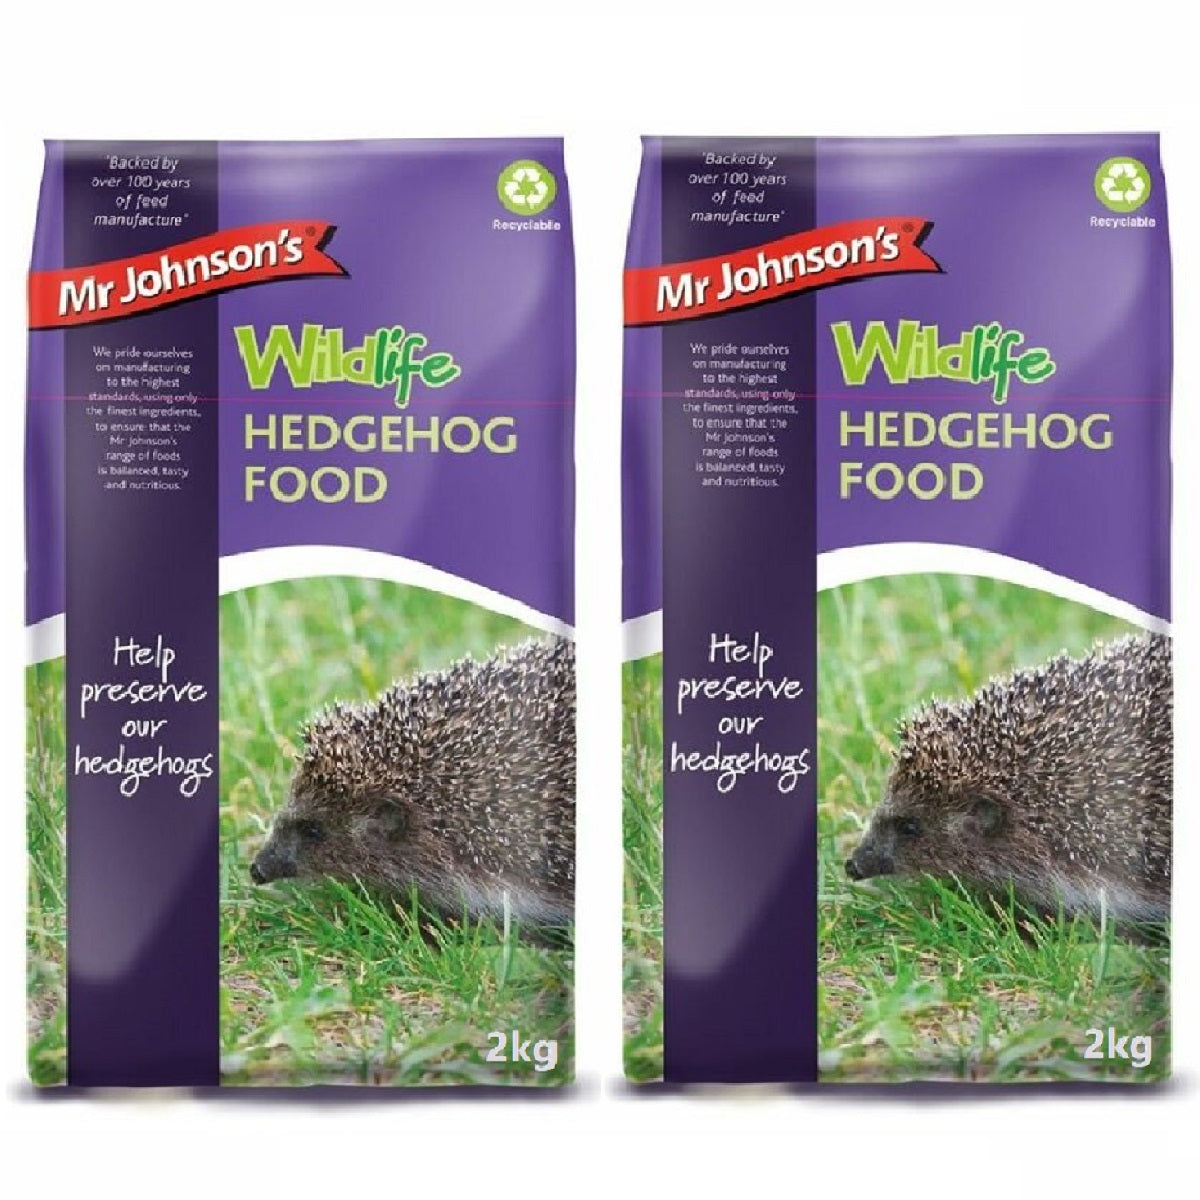 Mr Johnson's - Hedgehog Food (2kg)